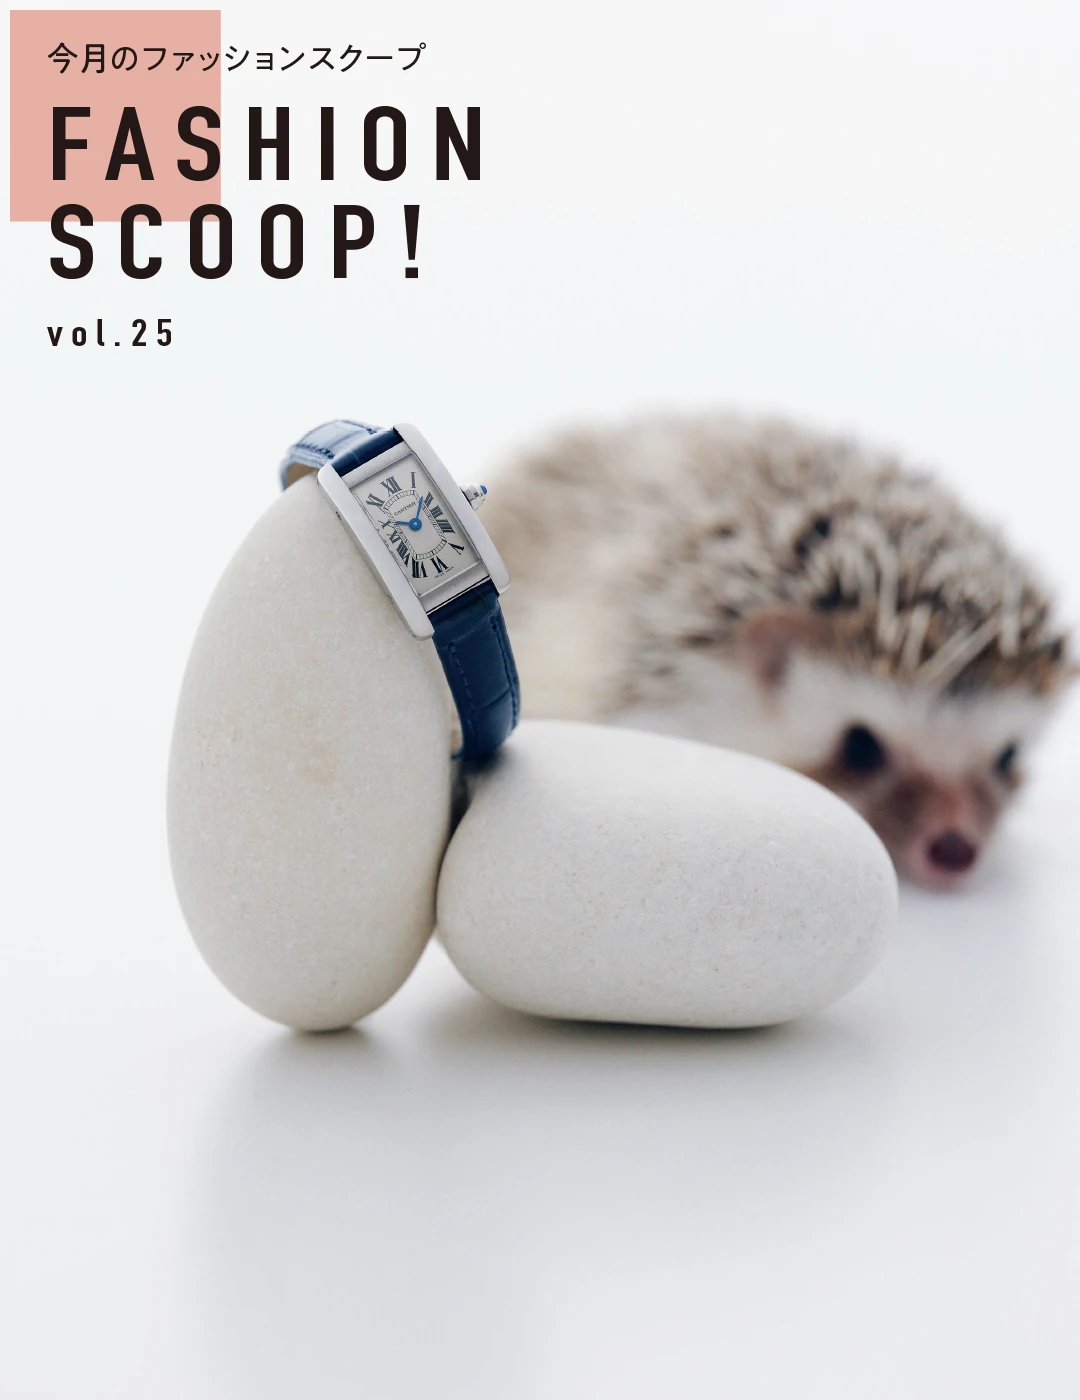 今月のファッションスクープ FASHION SCOOP! vol.25